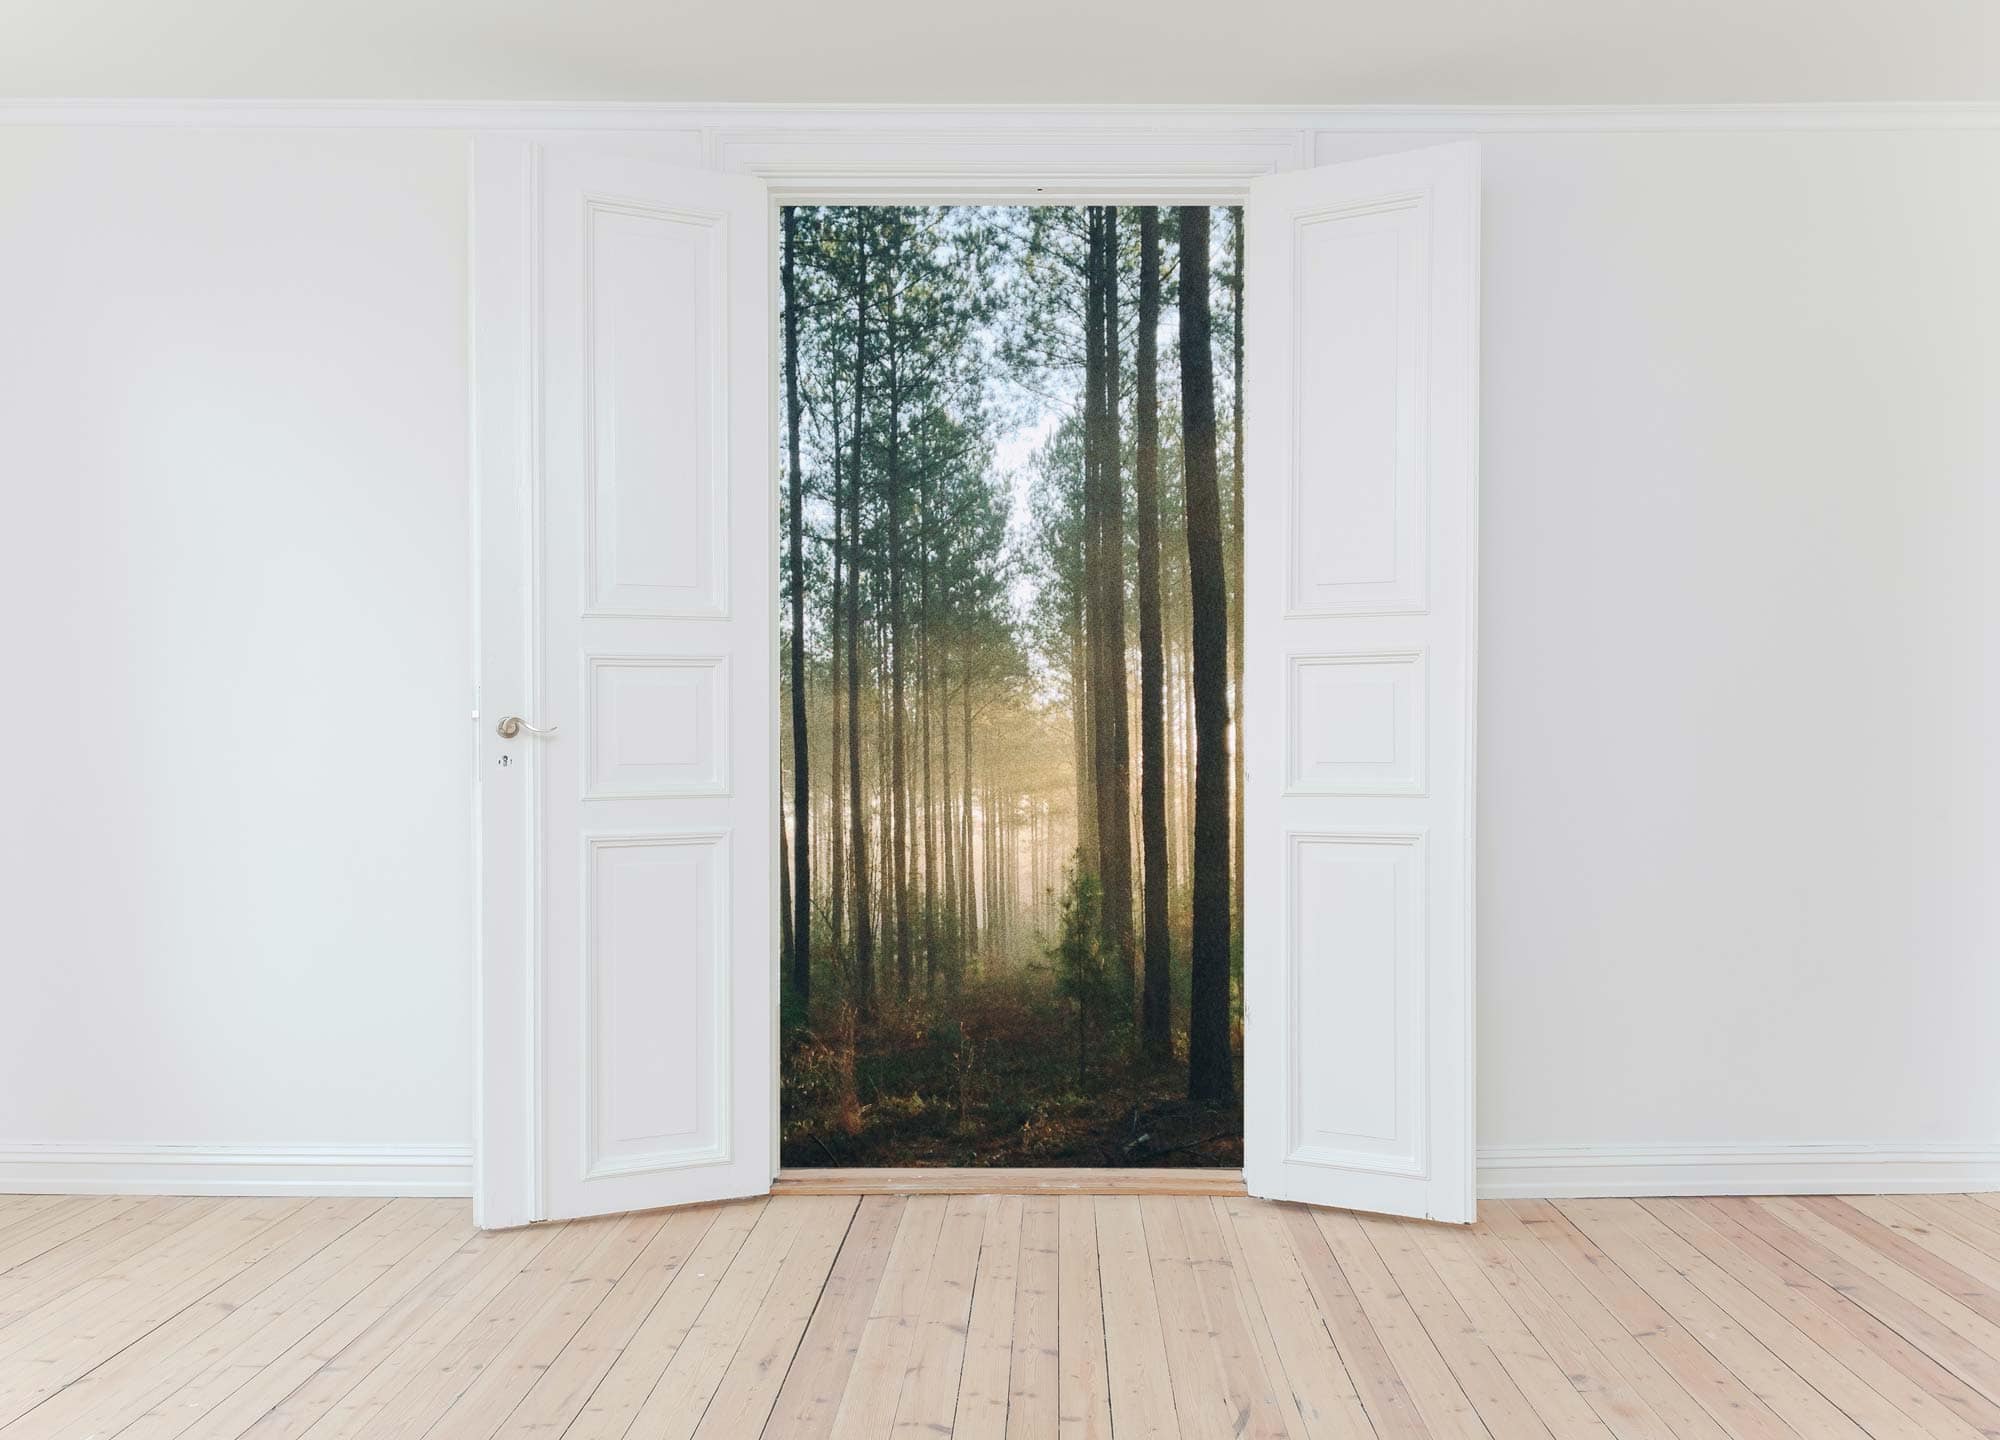 A forest through open doors.